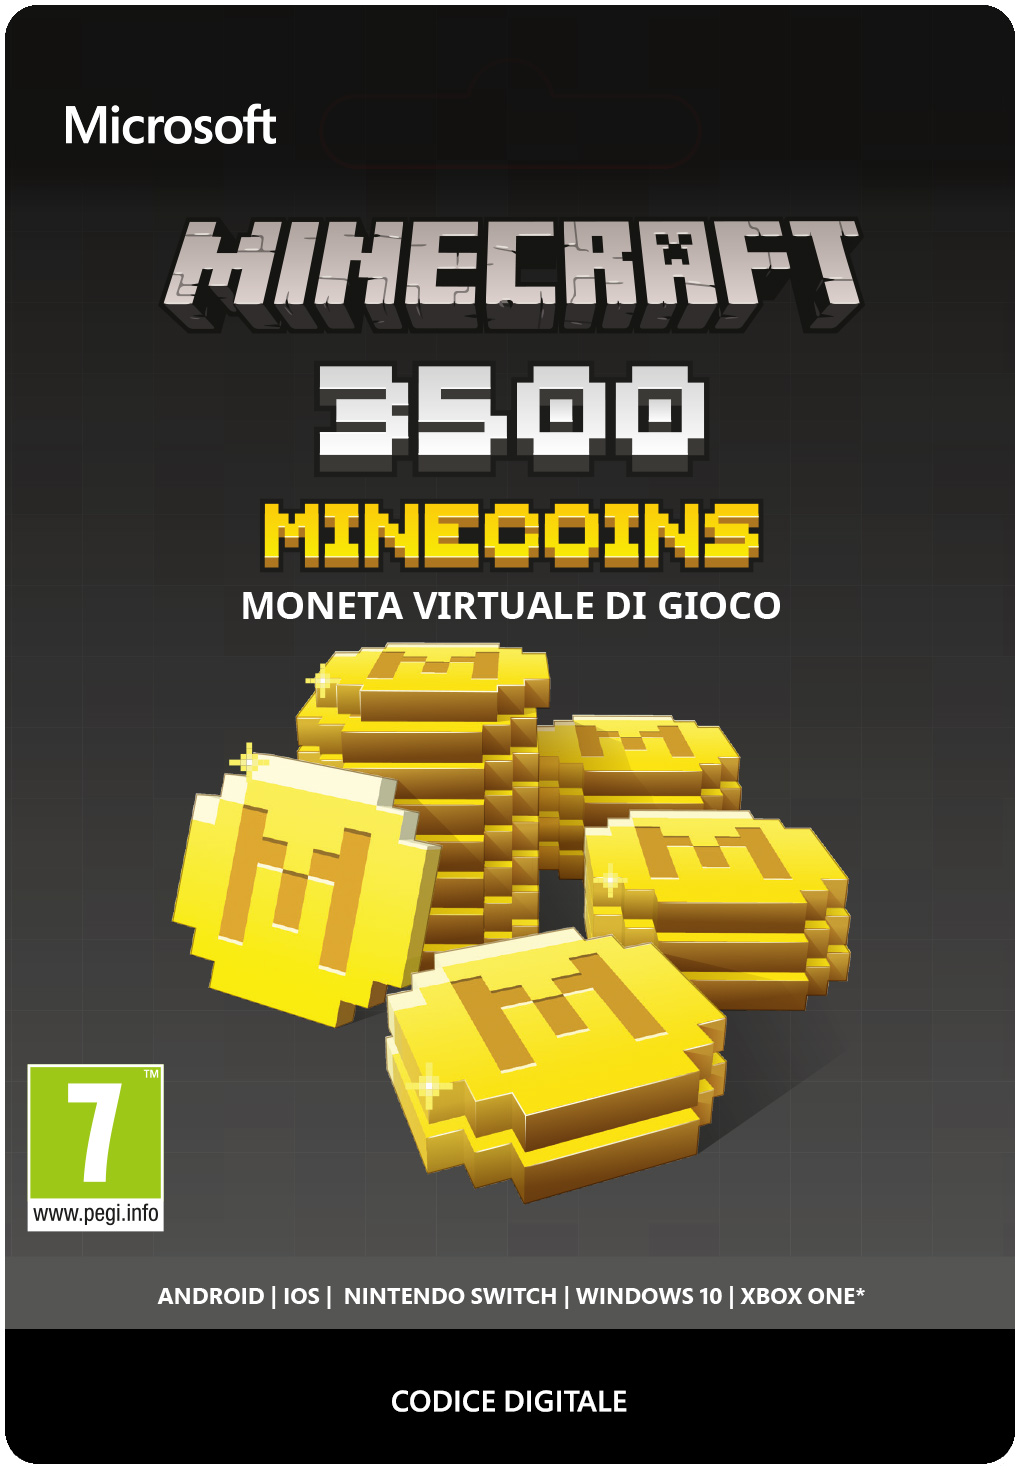 Minecraft Minecoins 3500 Coins